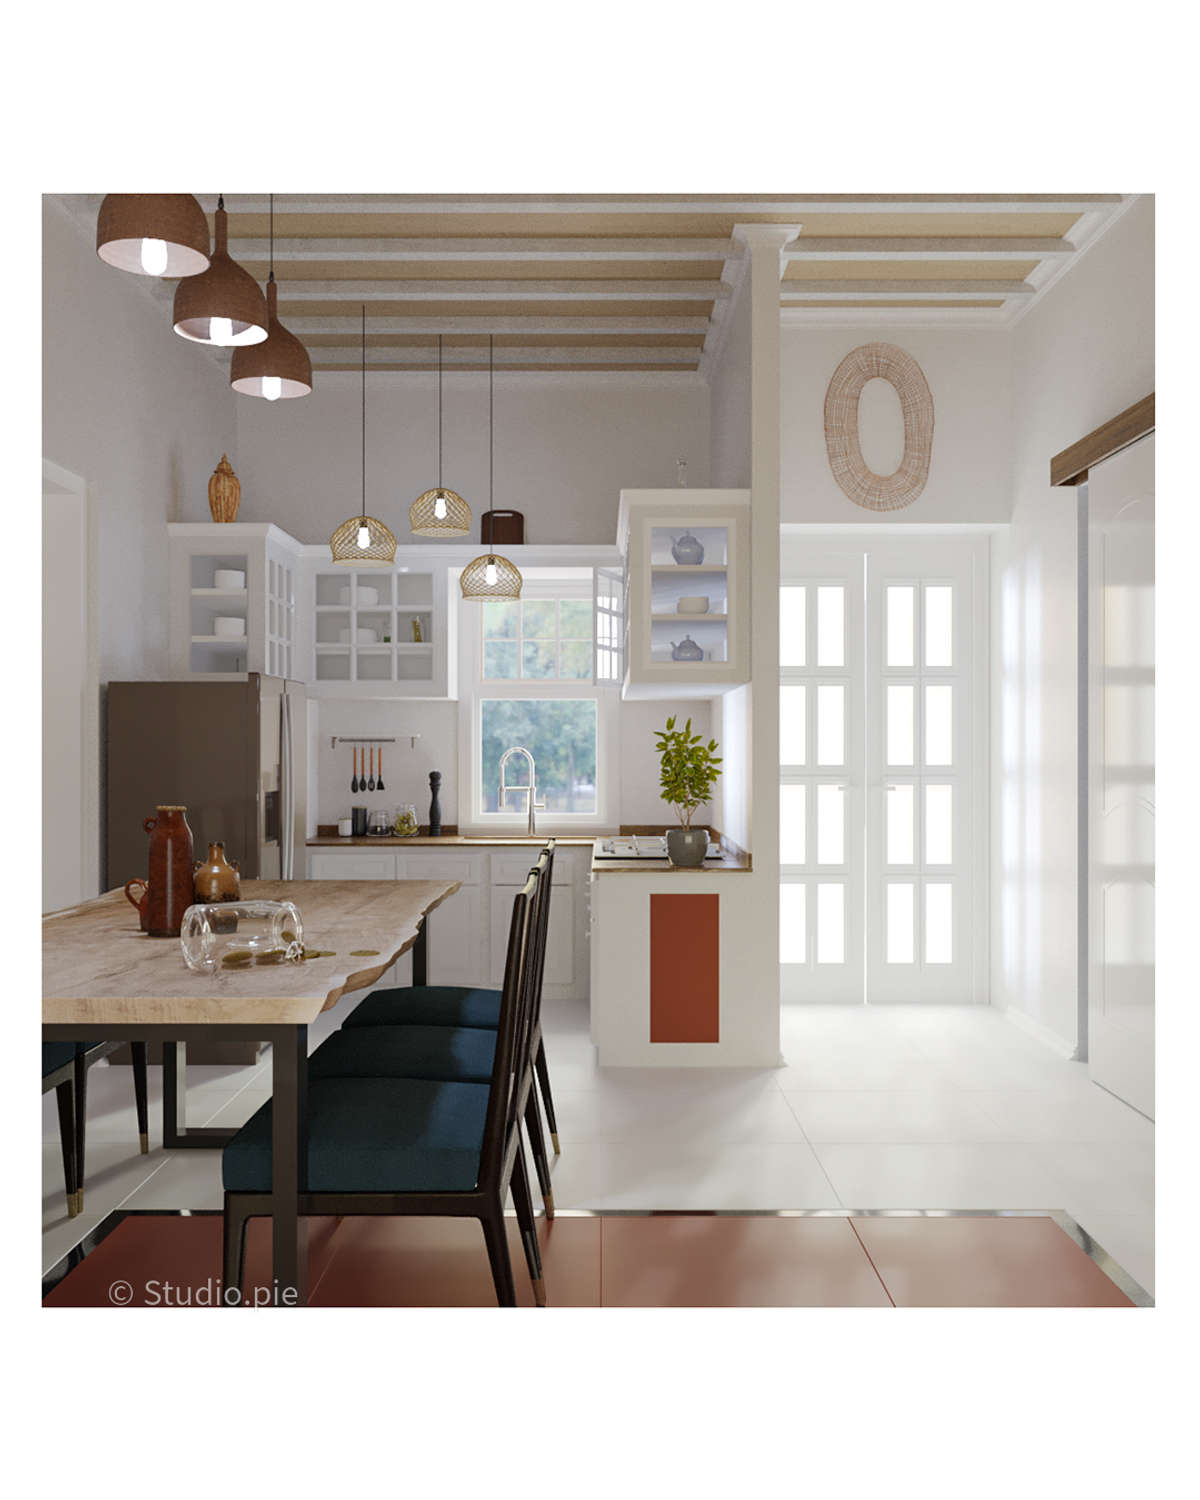 Dining cum kitchen. 
Interior design. 
Wagamon.
Studio.pie
